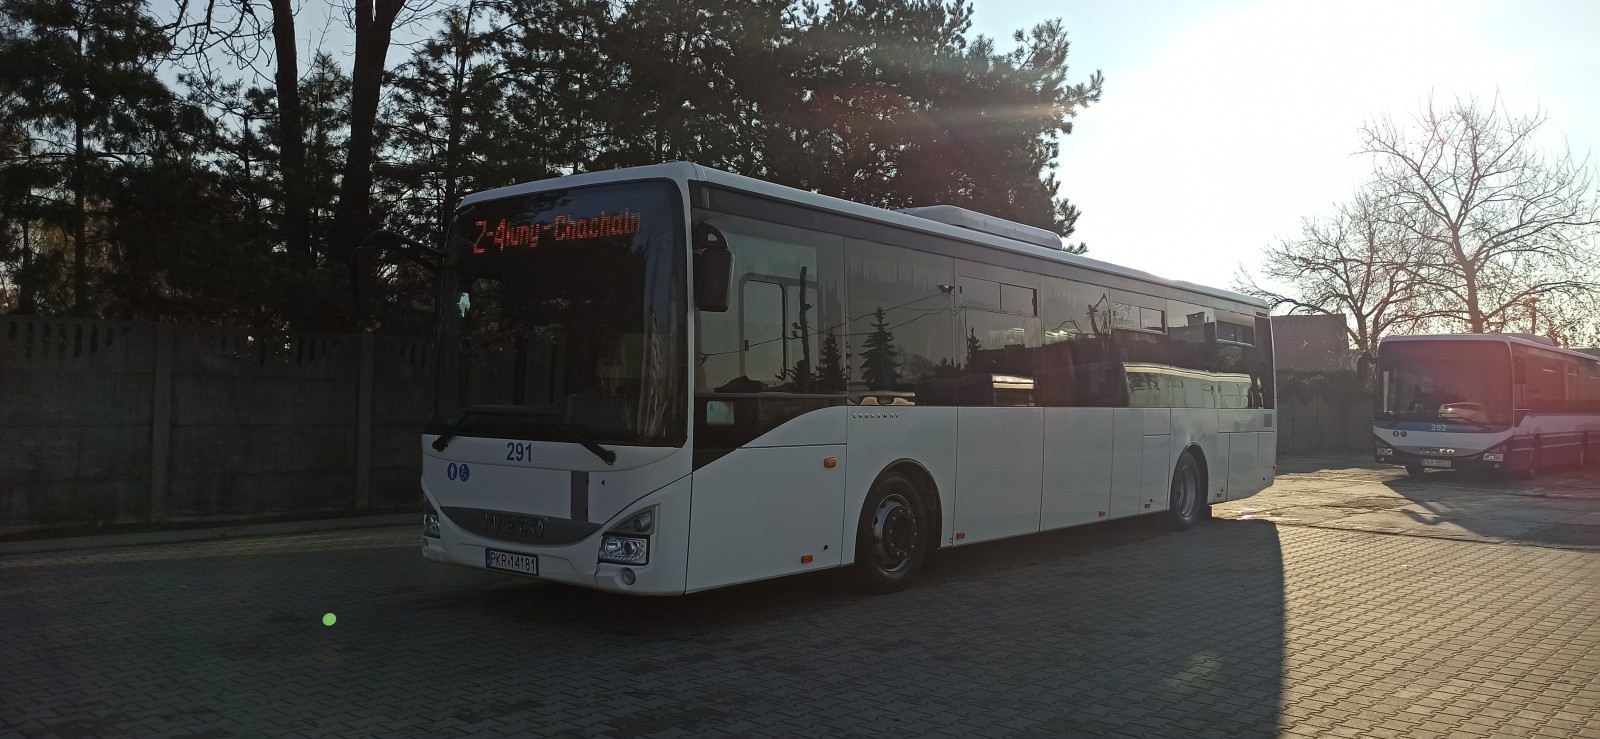 Autobus Iveco, widok z boku.